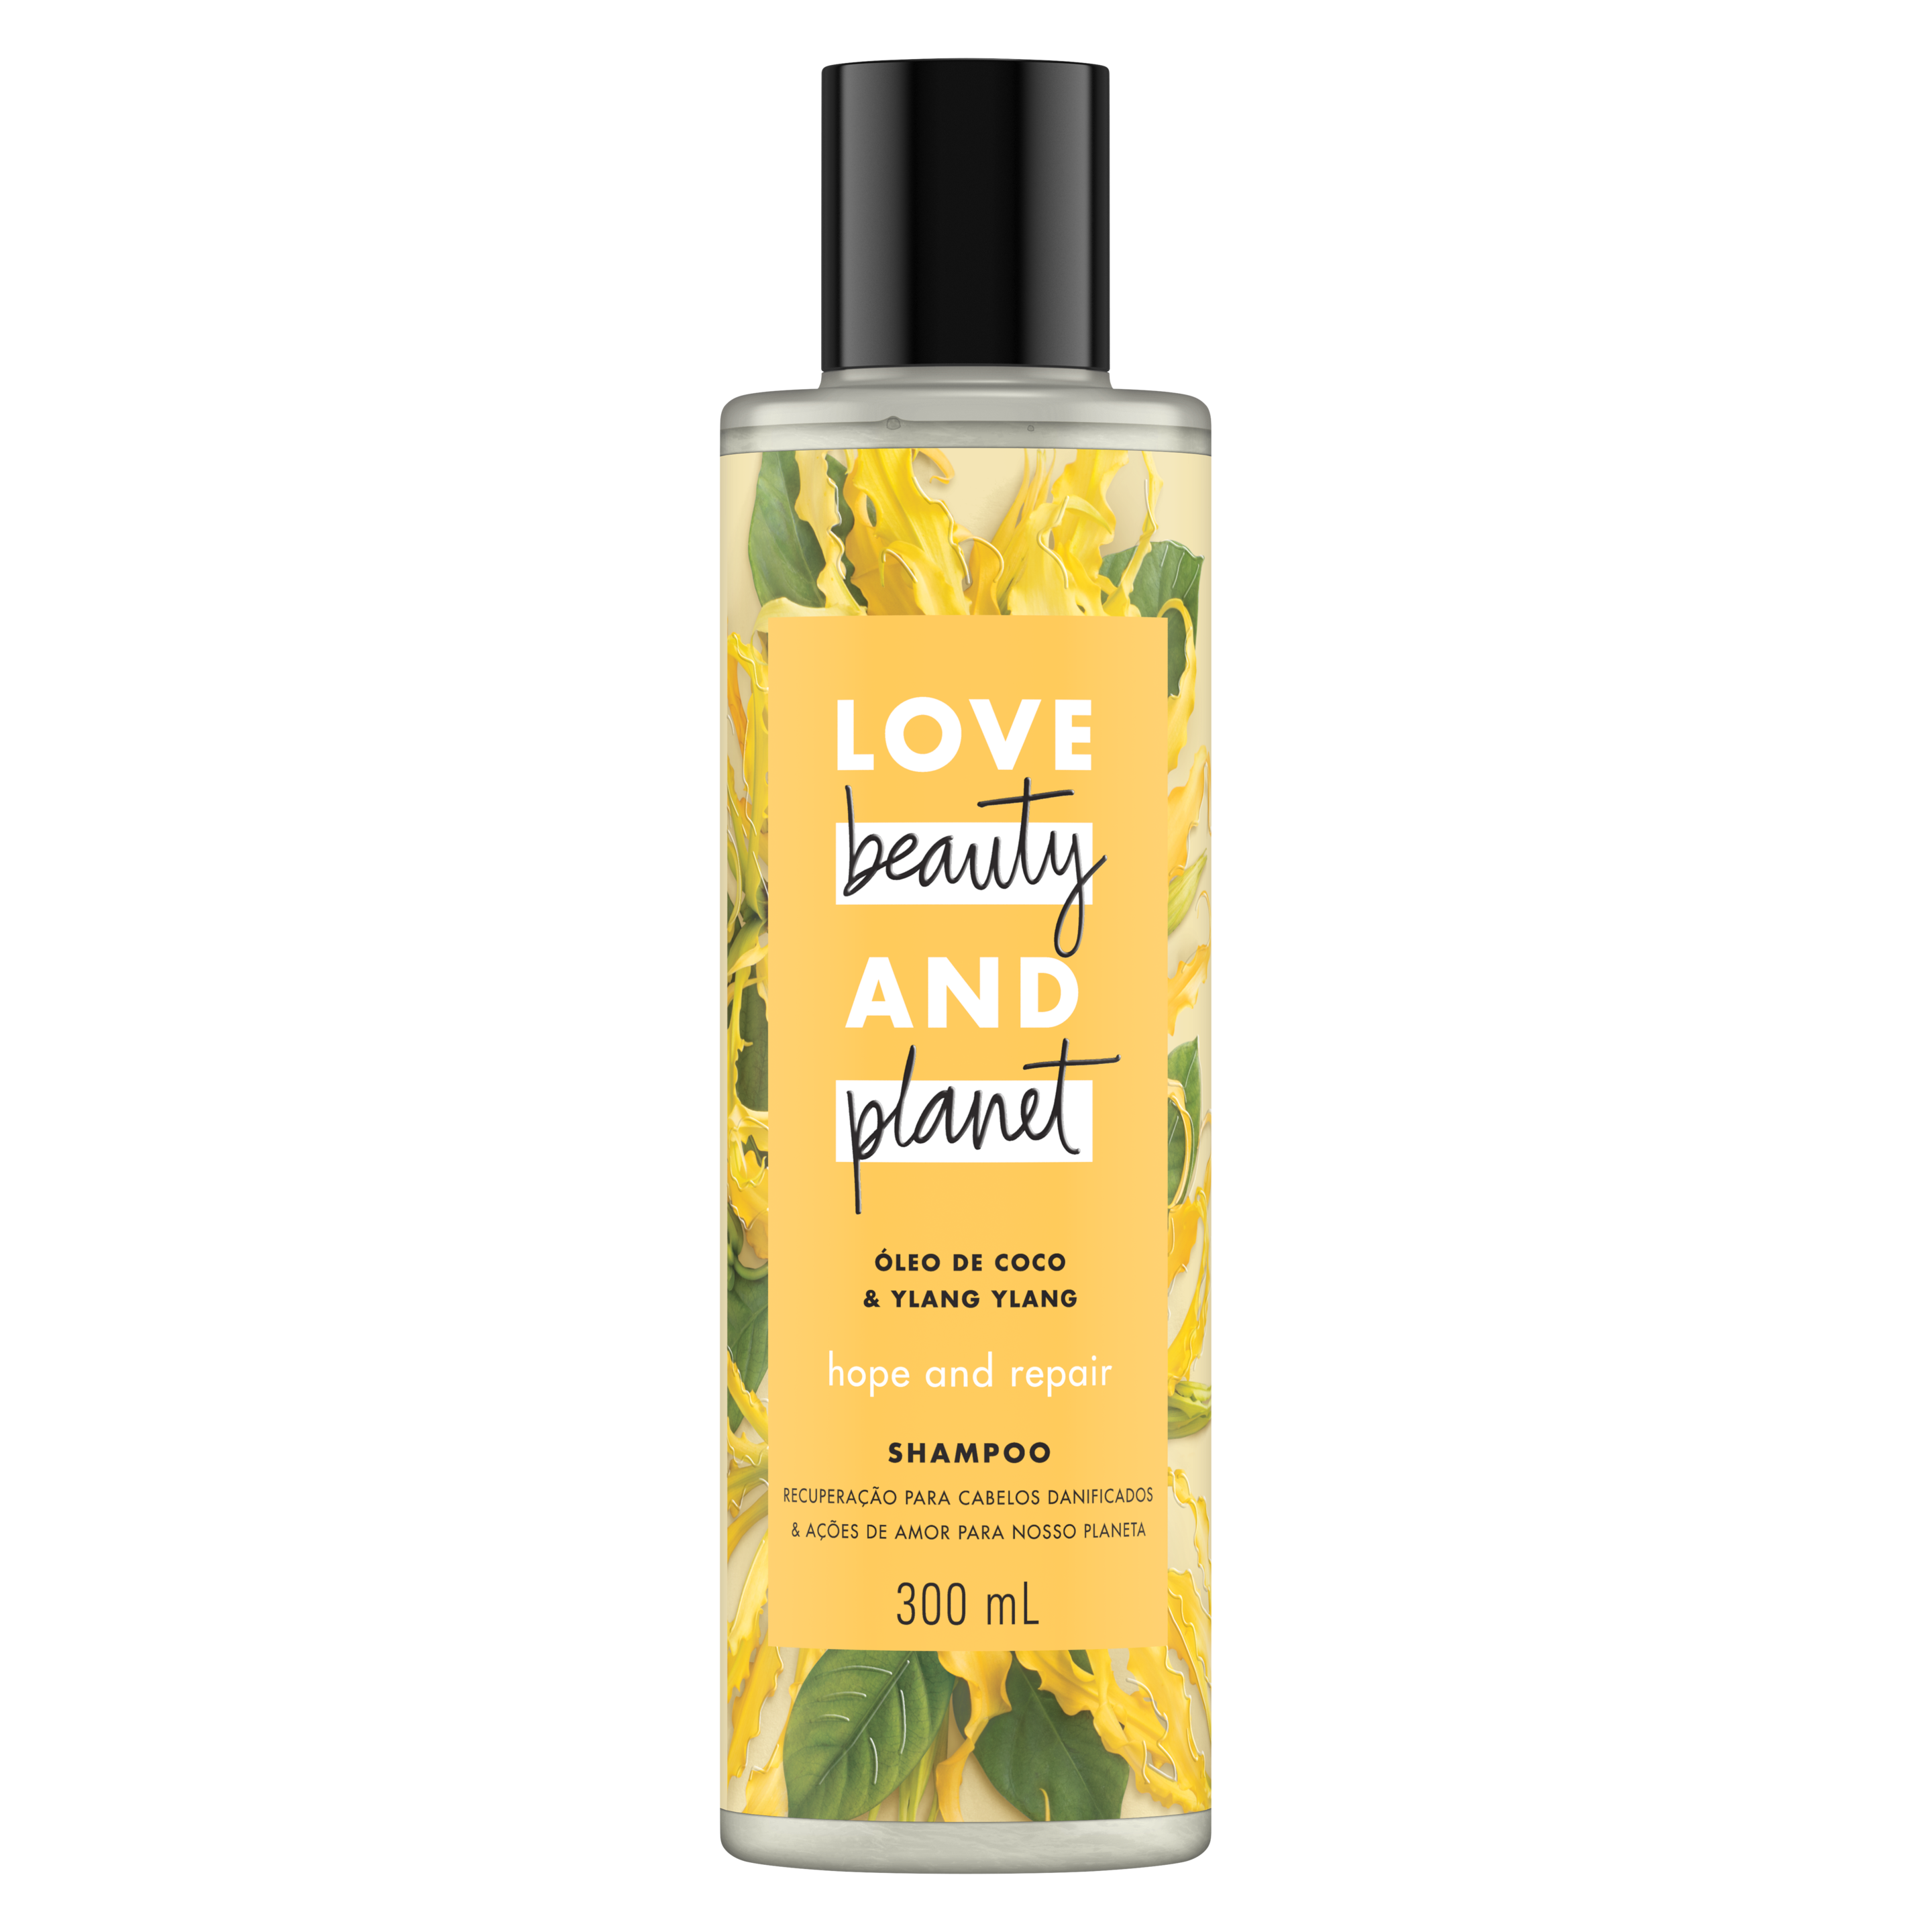 shampoo com óleo de coco & ylang ylang Text